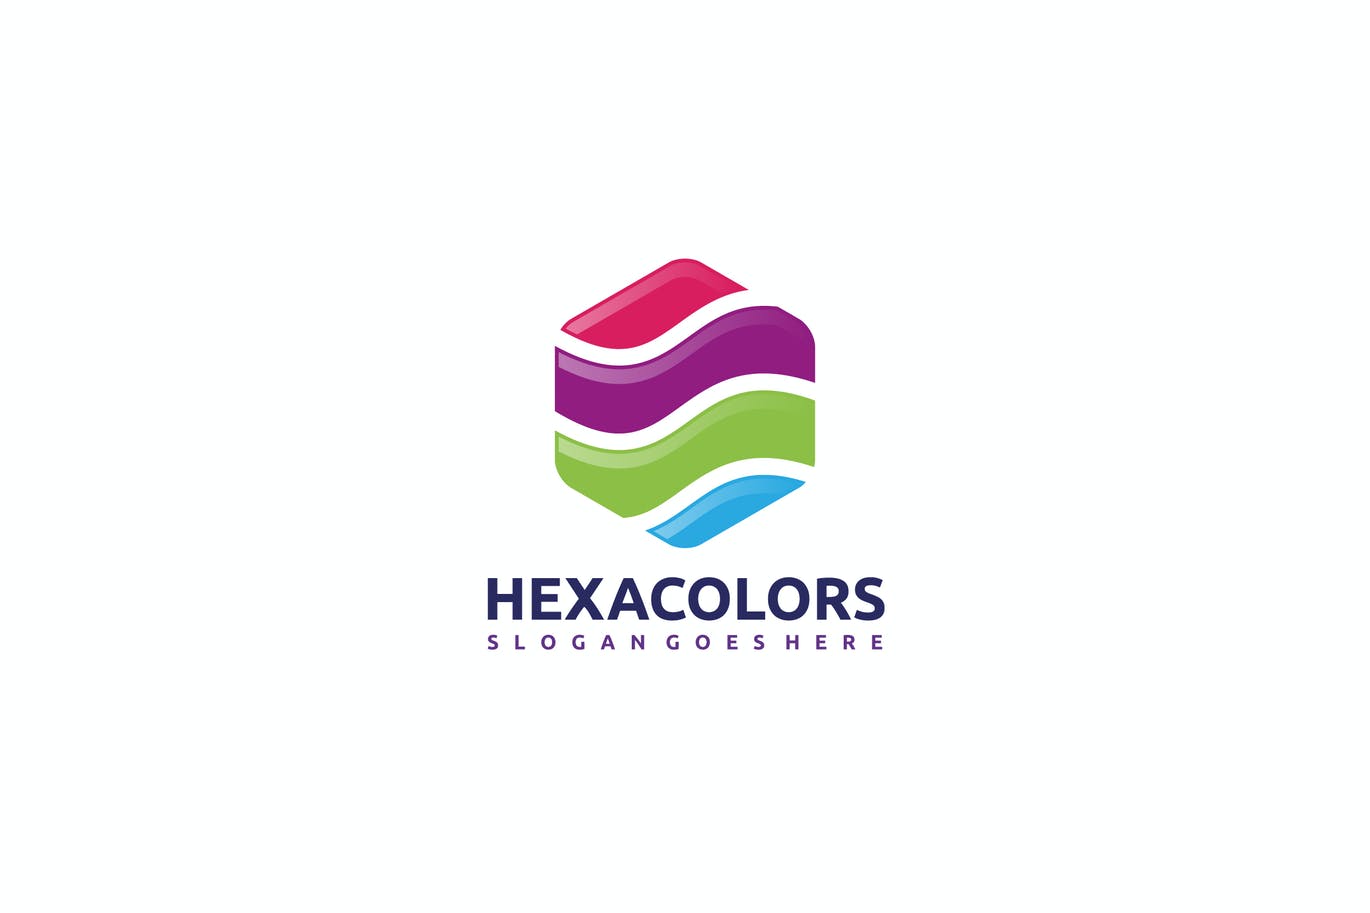 A hexagon colored logo template